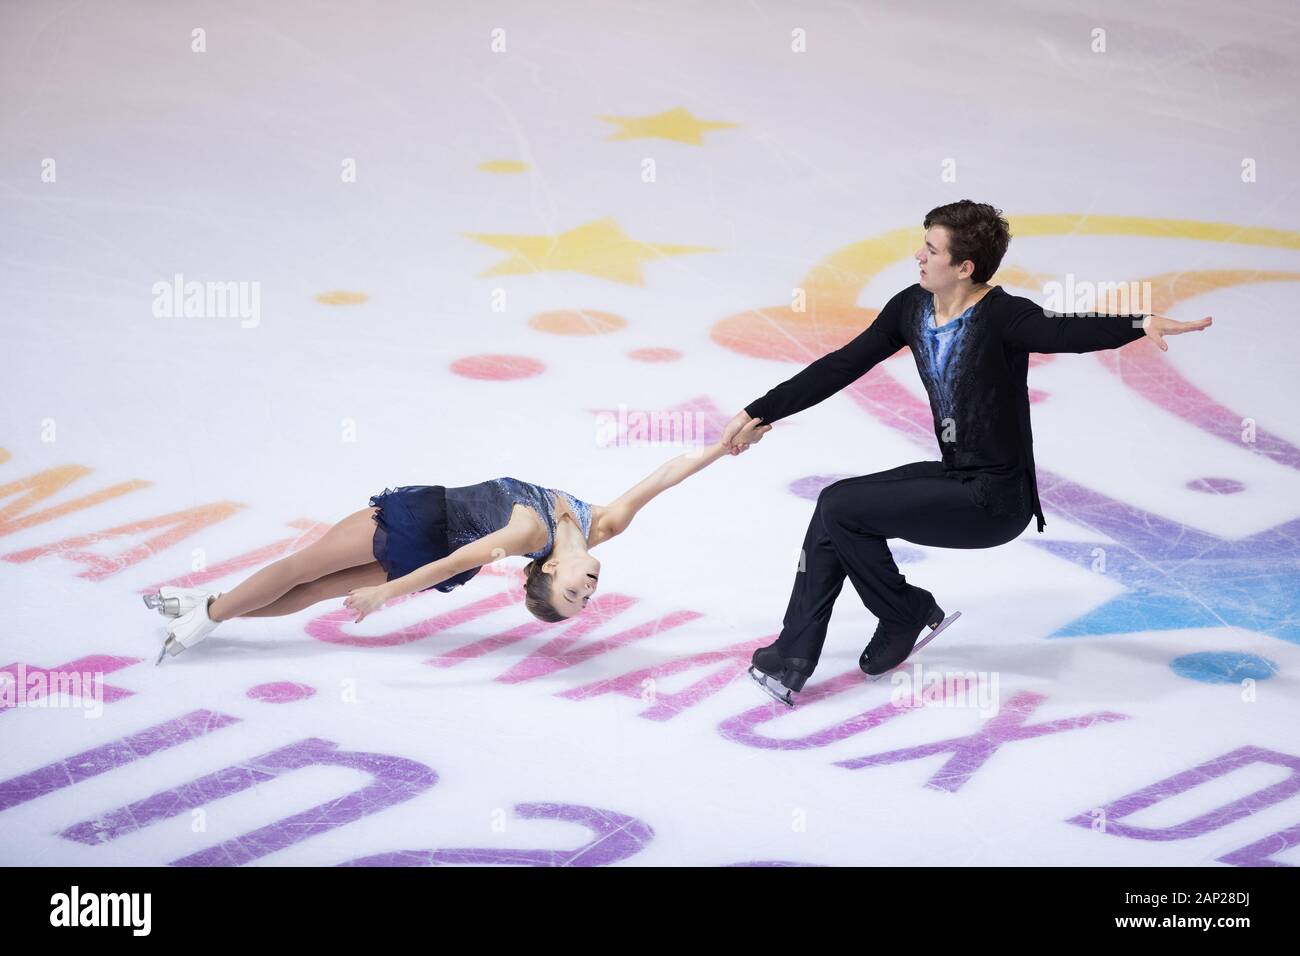 Daria Pavliuchenko and Denis Khodykin from Russia compete in the pairs short program during day 1 of the ISU Grand Prix of Figure Skating - Internatio Stock Photo